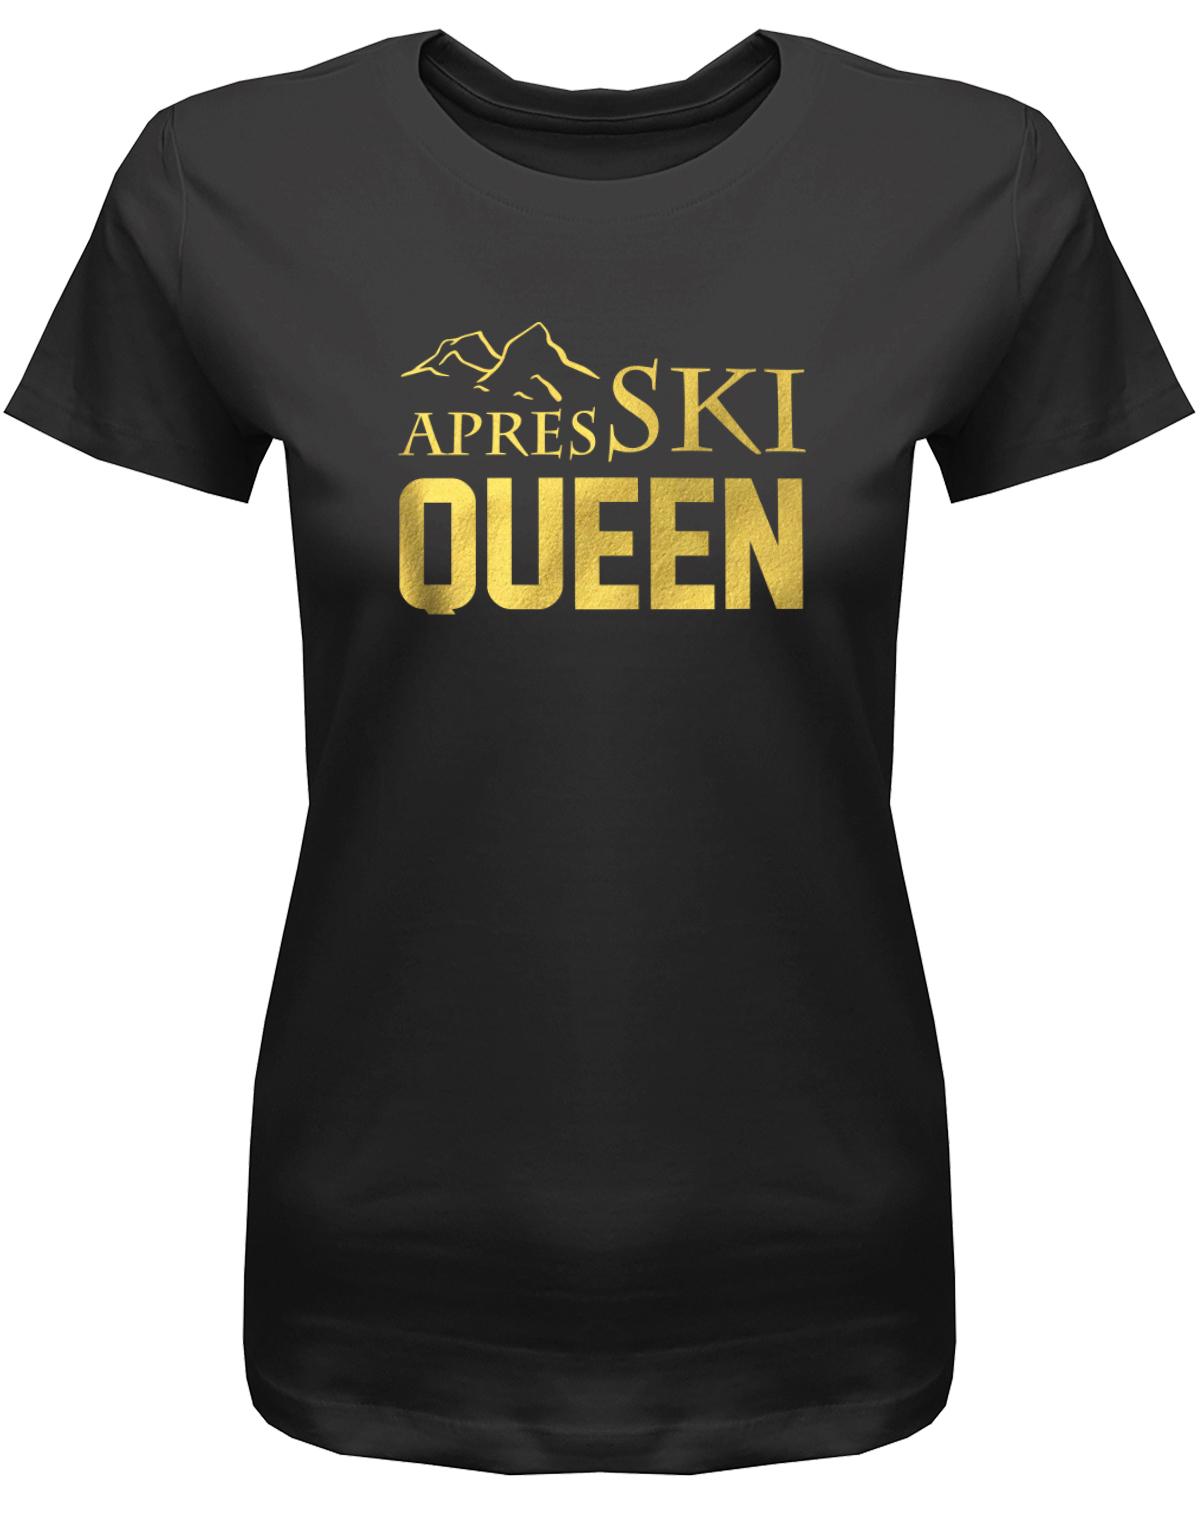 Apres-Ski-Queen-Damen-Shirt-schwarz